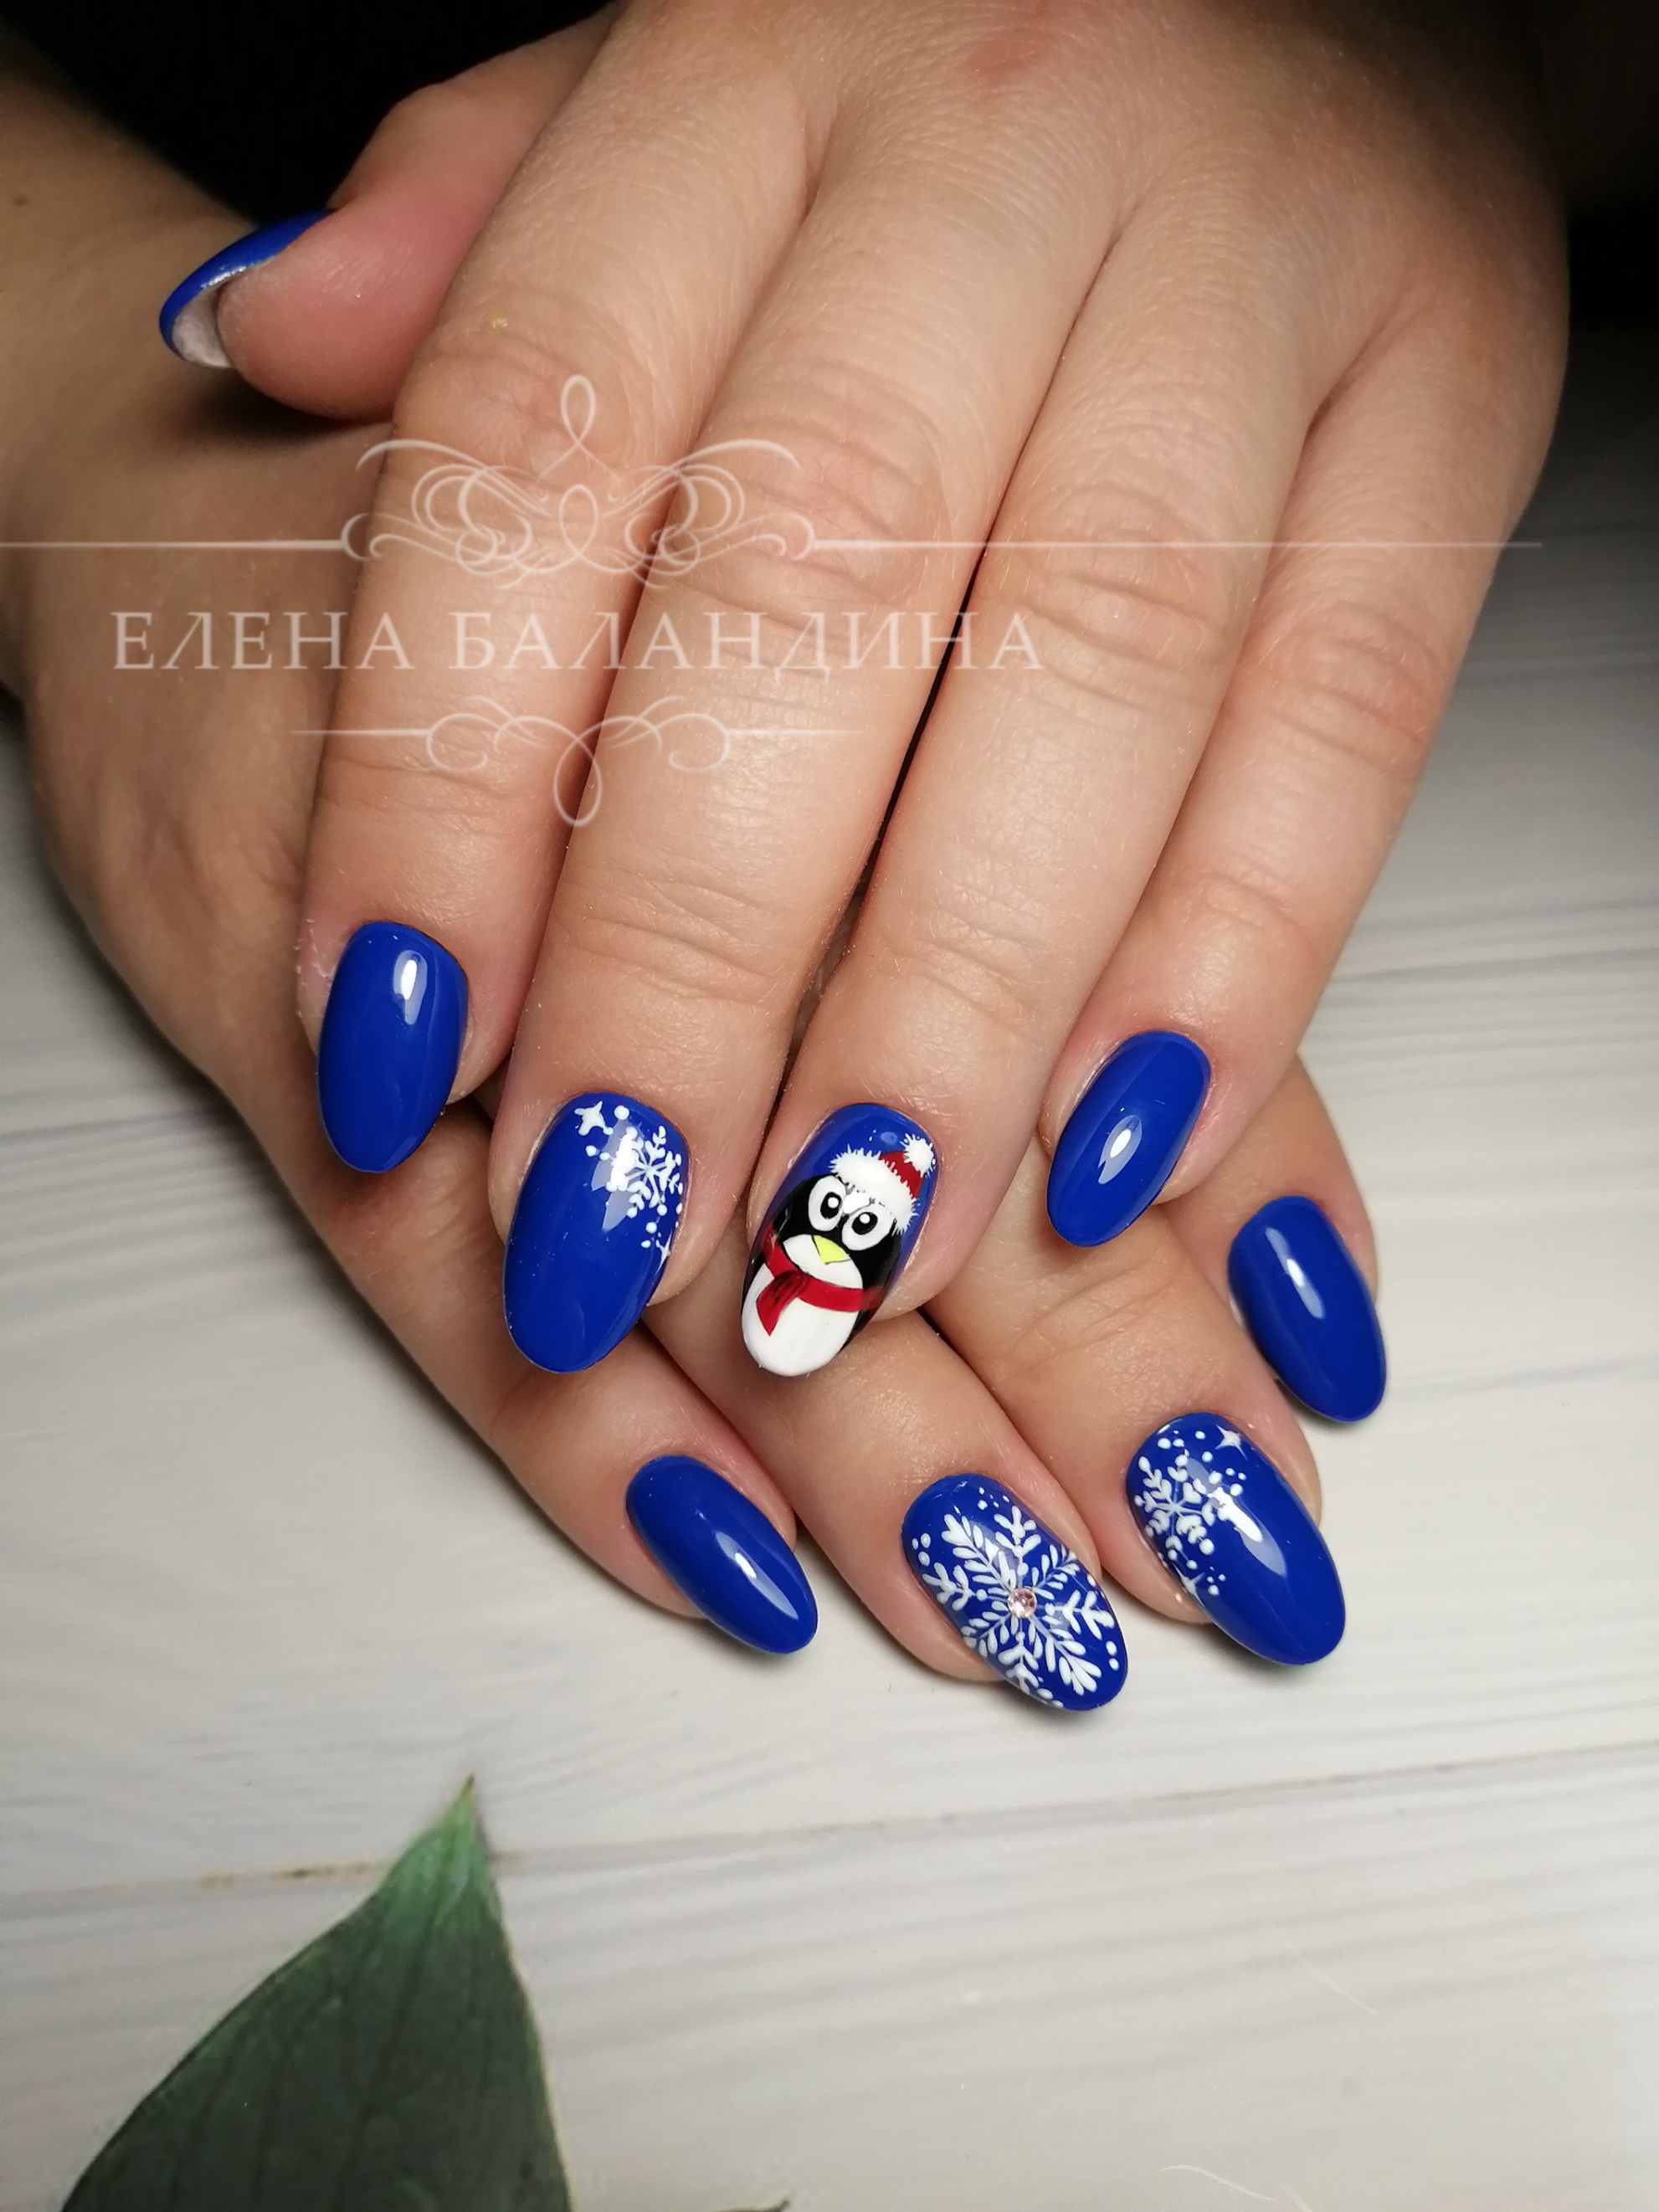 Маникюр в синем цвете с новогодним рисунком "пингвин" и "снежинки".